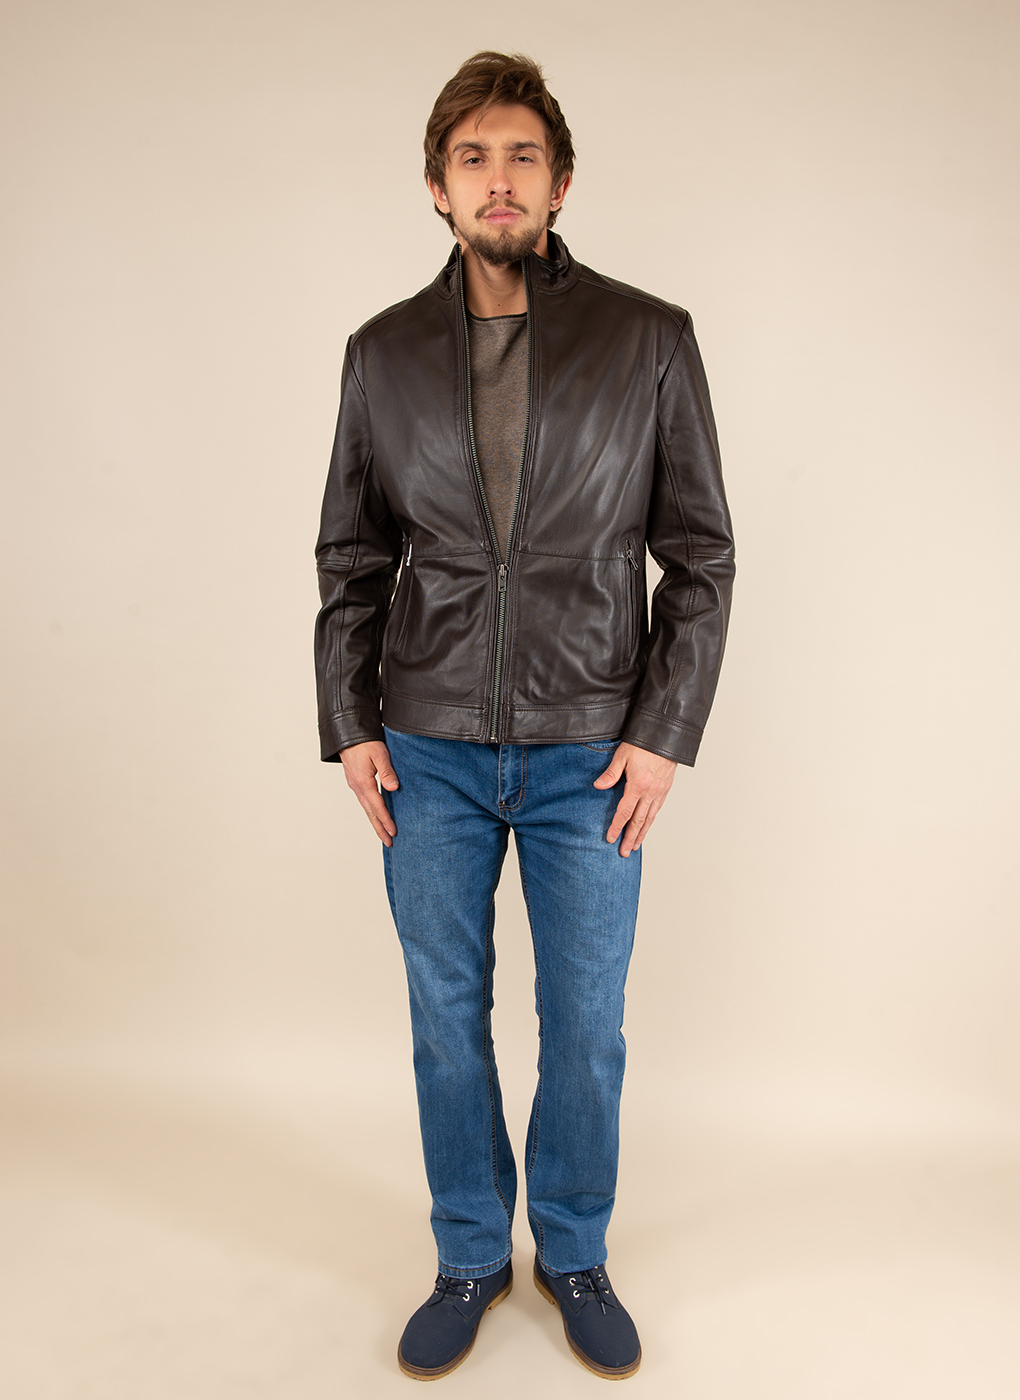 Кожаная куртка мужская Каляев 51795 коричневая 50 RU